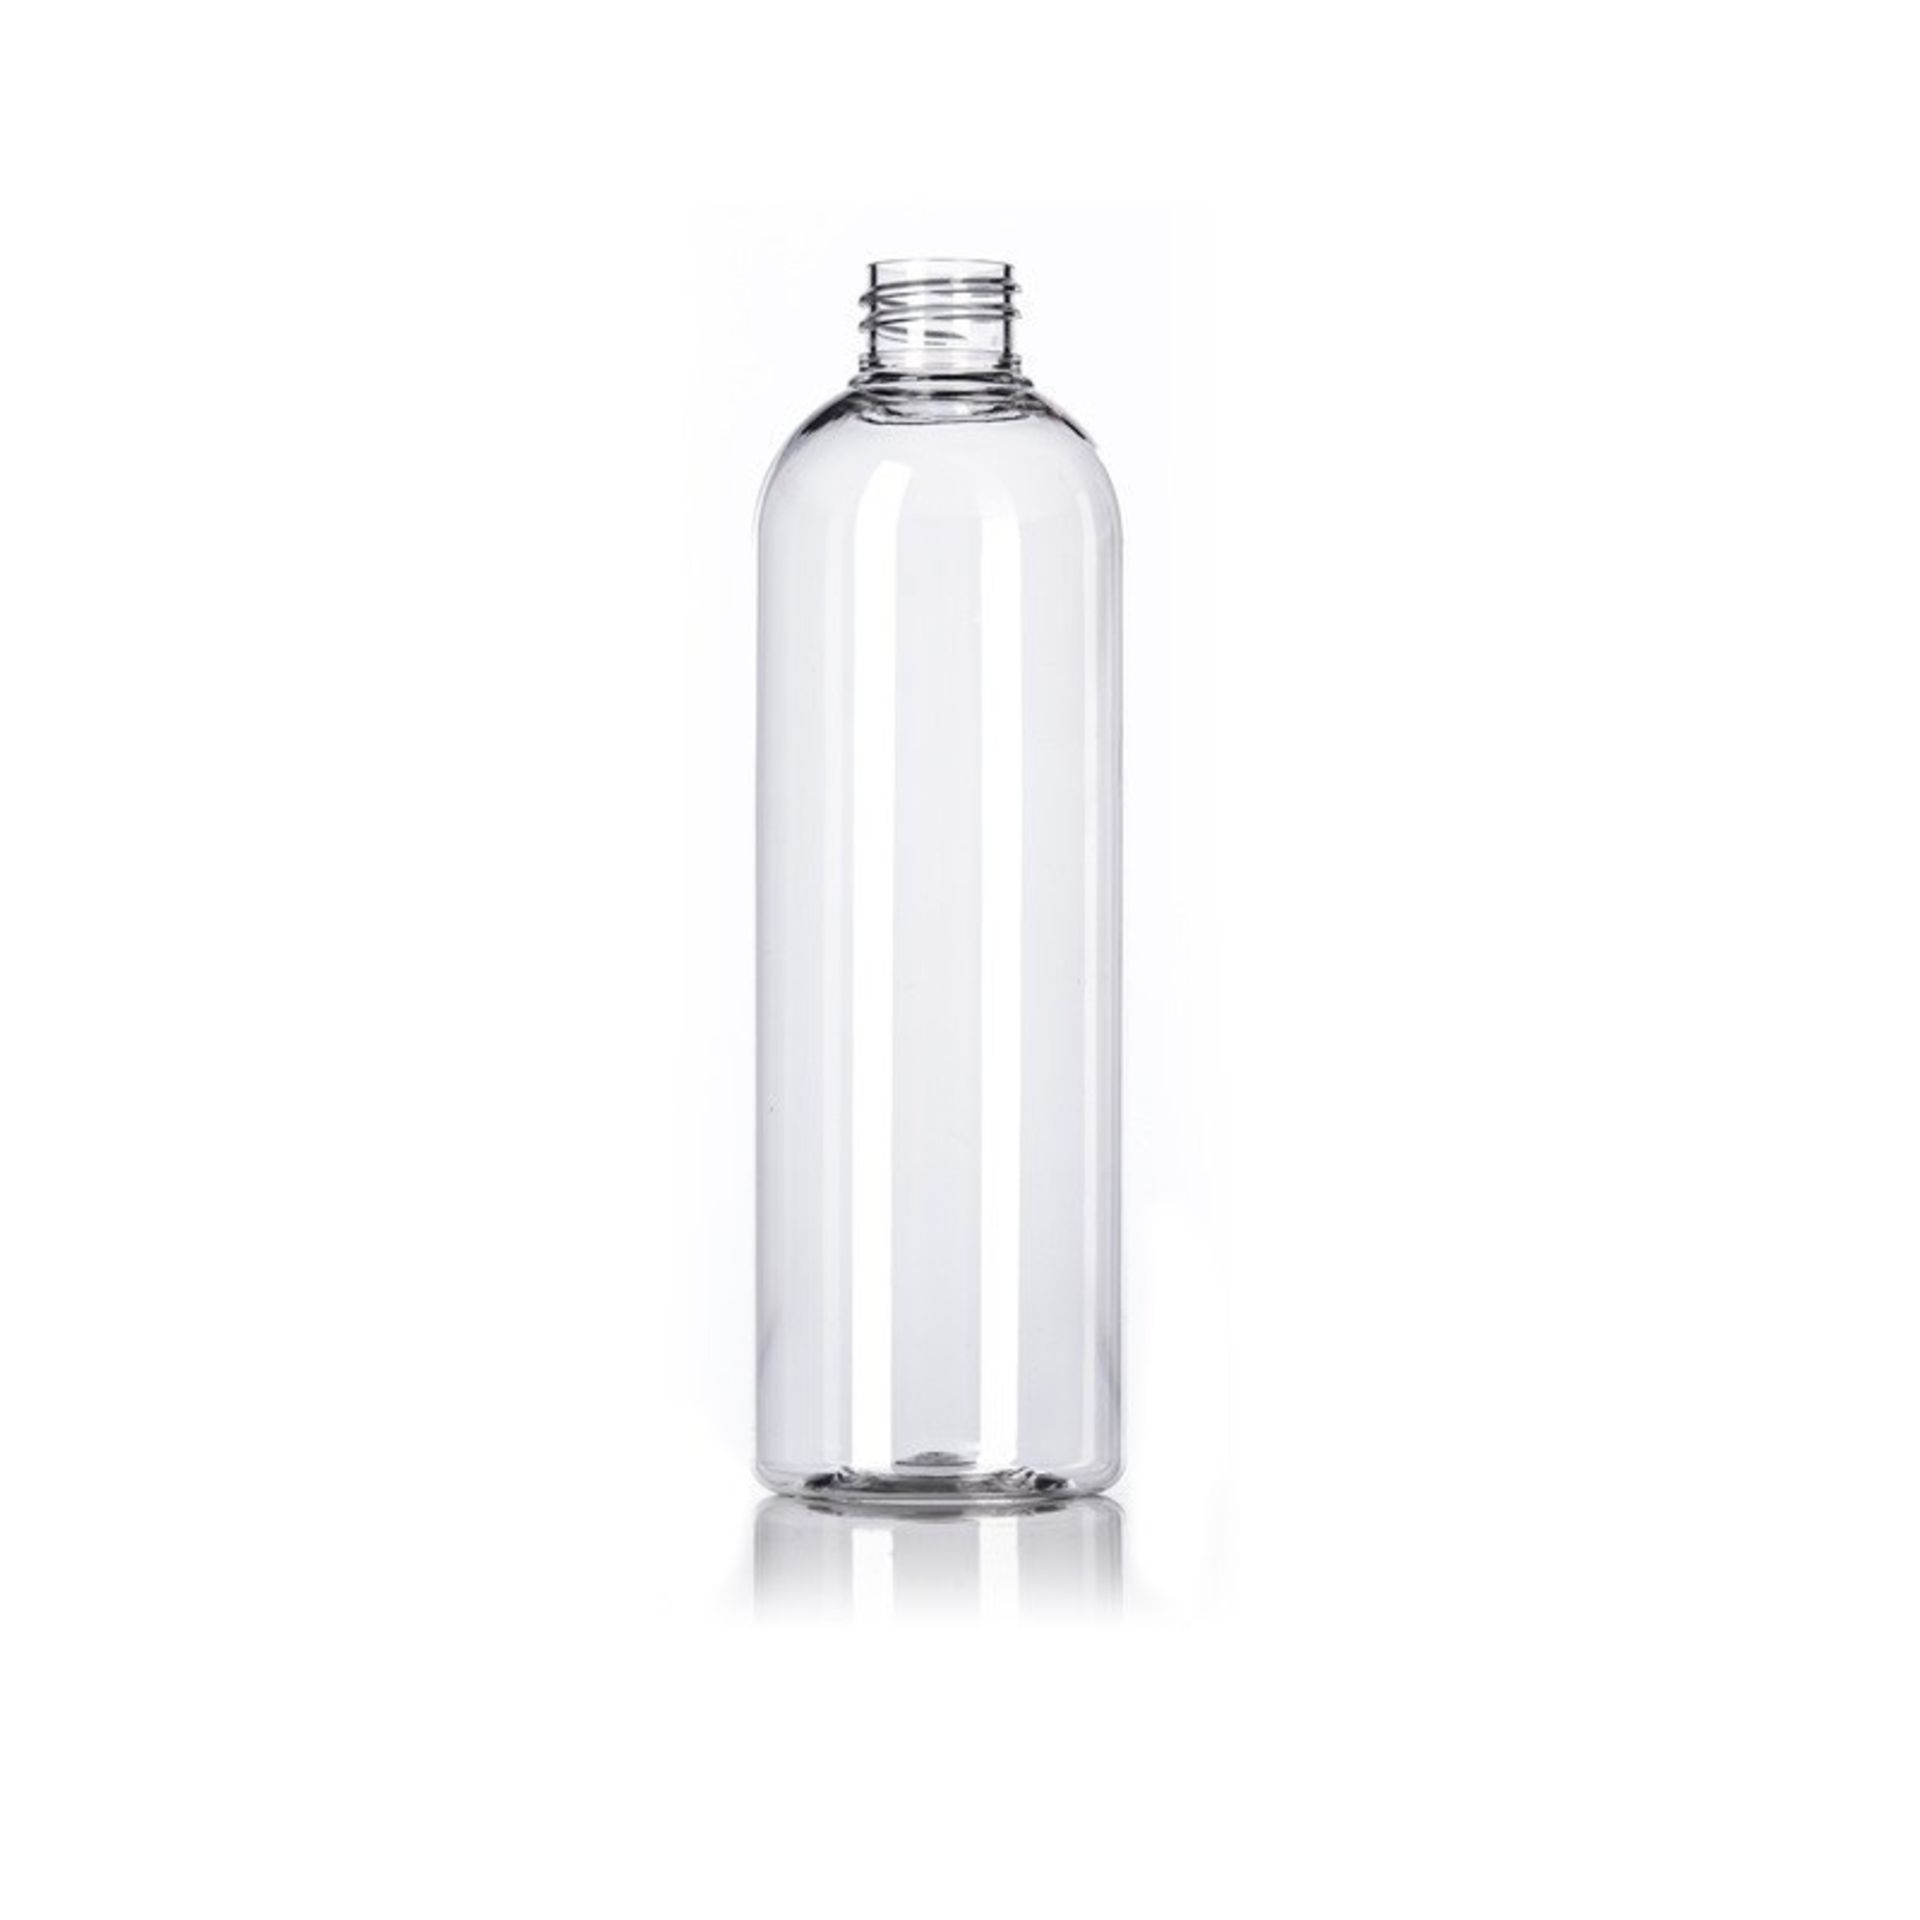 30,000 - 16 oz Empty Bullet Plastic Bottles, Neck Threading 28-410, 8" Tall, 2.5" Diameter - Image 2 of 8